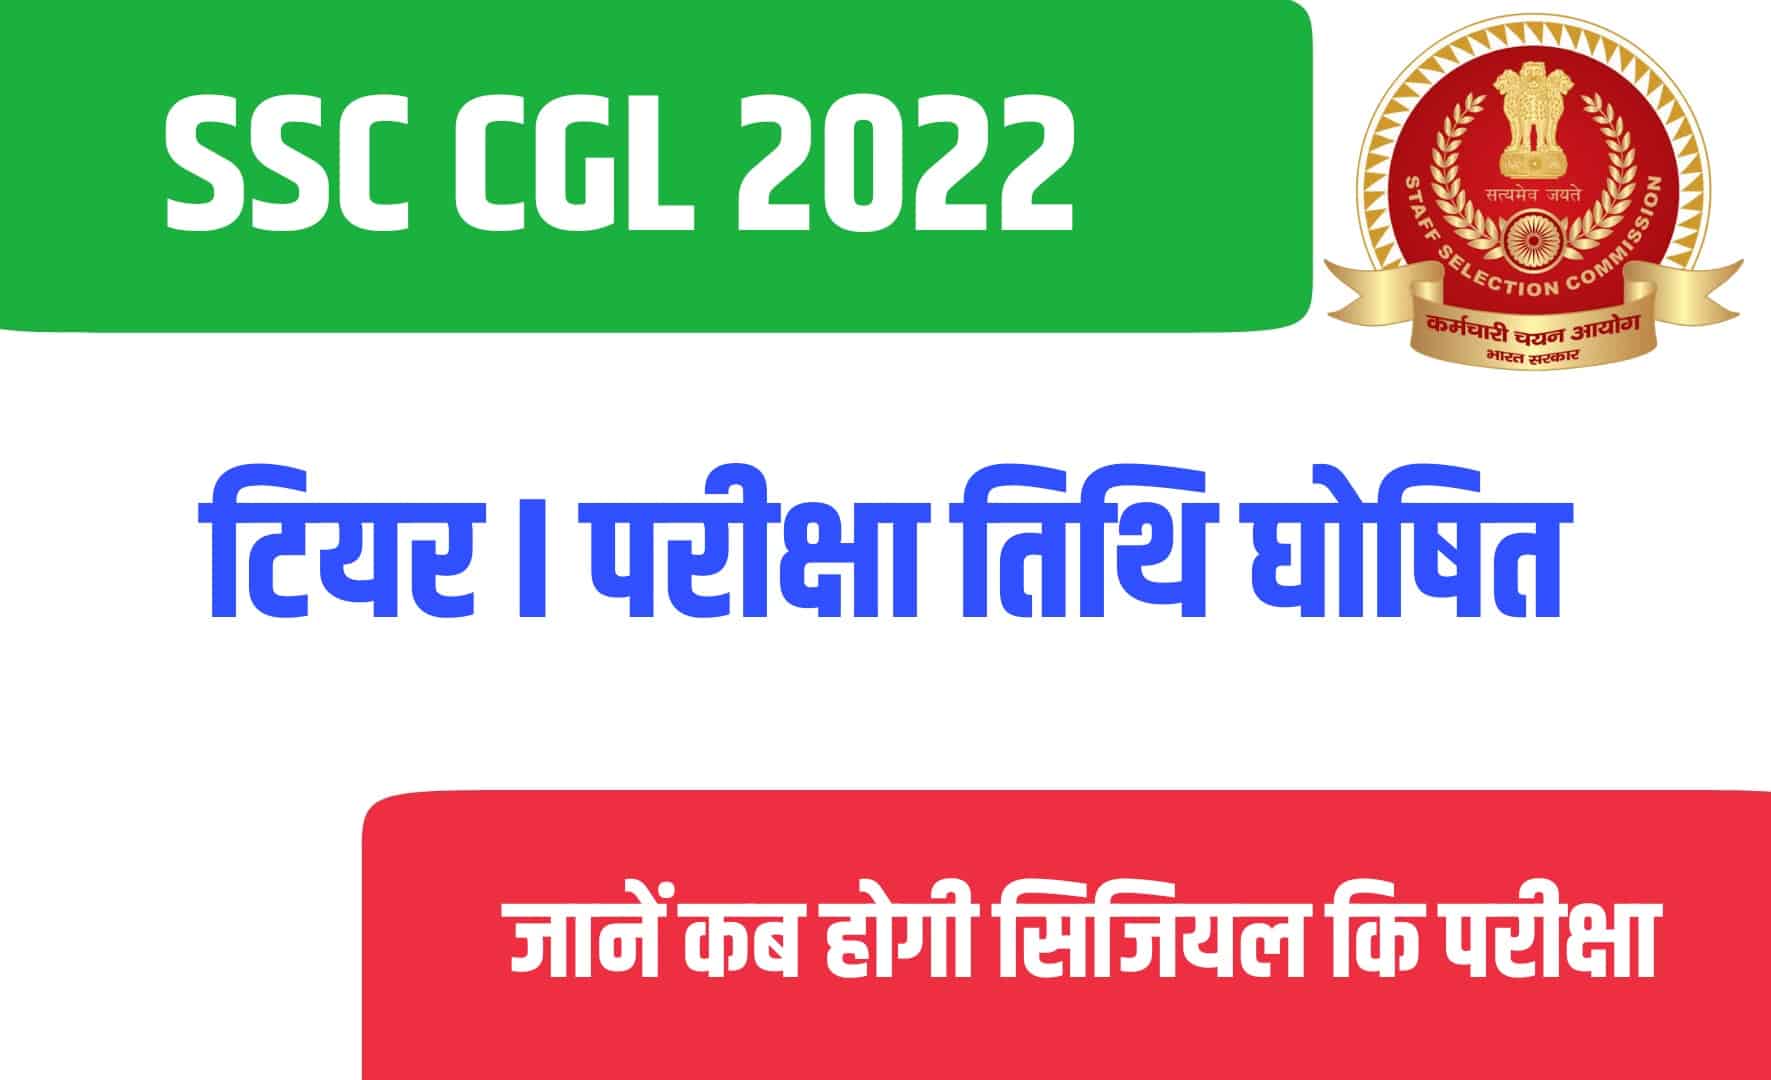 SSC CGL 2022 Tier I Exam Date | एसएससी सिजियल टियर I परीक्षा तिथि जारी